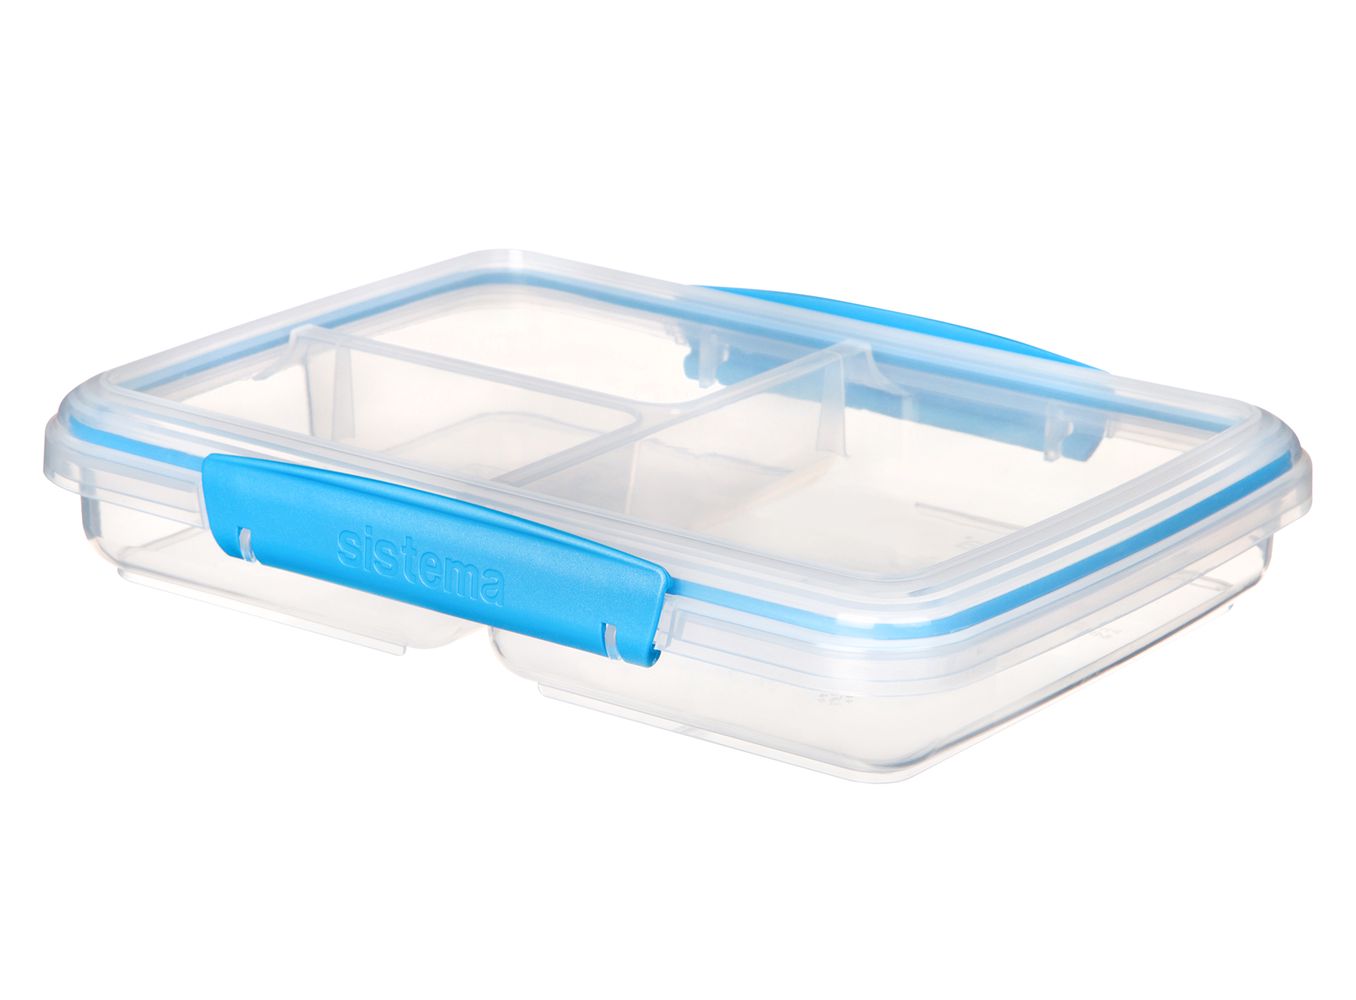 Specificiteit Onbeleefd vraag naar Sistema Lunchbox To Go Blauw Kopen? | Cookinglife